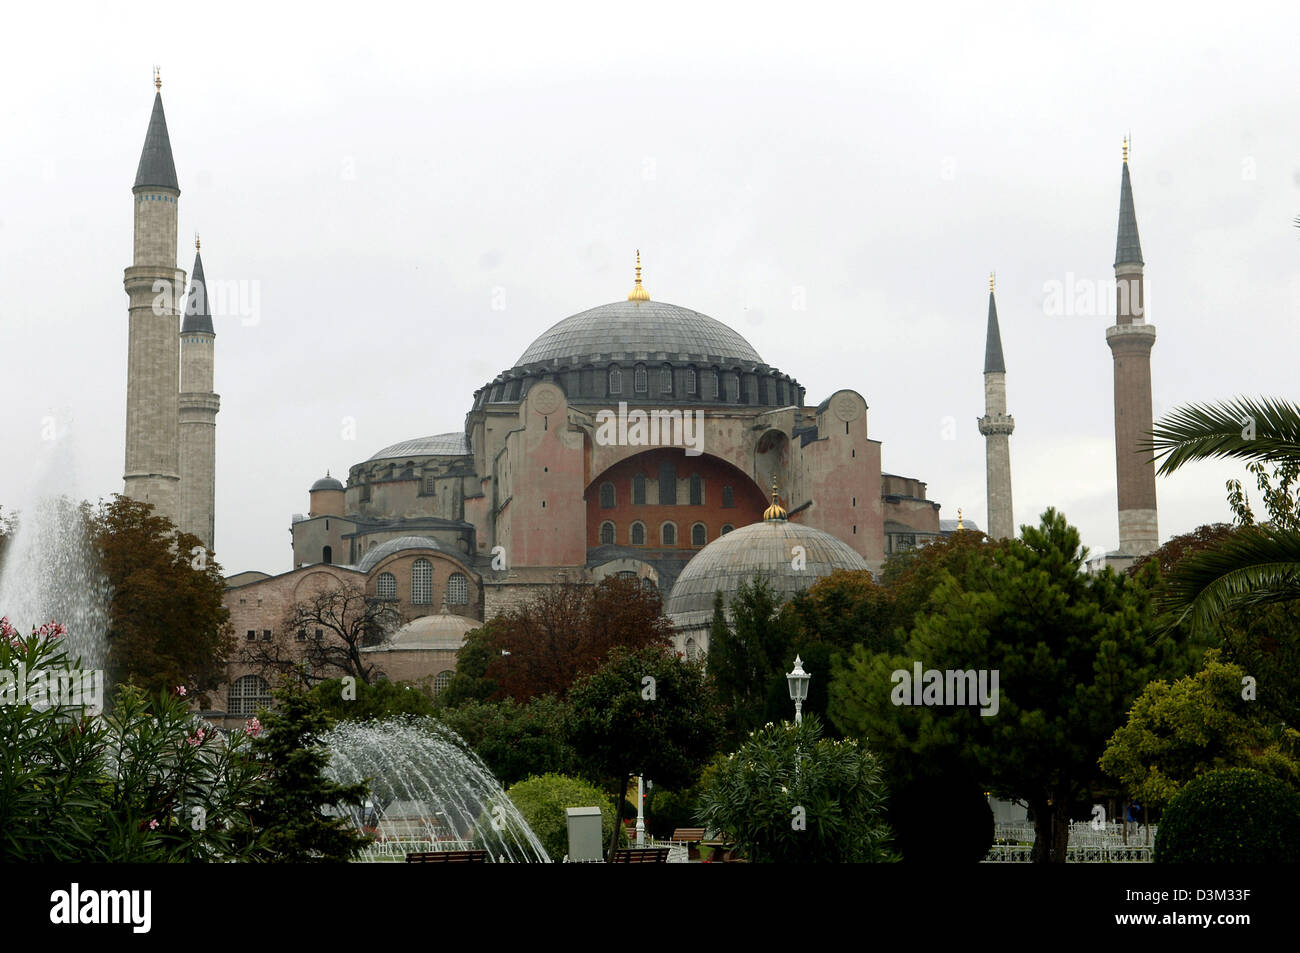 (Dpa) - die Hagia Sophia in Istanbul, Türkei, 19. Oktober 2005. Die Hagia Sophia, die "Kirche der göttlichen Weisheit" wurde von 532 bis 537 gebaut und ist 55,60 m hoch. Die Kirche wurde nach der Eroberung von Constantinopel durch Mehmet II in eine Moschee umgewandelt und mit vier Minaretten ausgestattet. Seit 1934 ist es ein Museum. Es bekam 1985 in Liste des UNESCO-Weltkulturerbes aufgenommen. Foto: Stockfoto